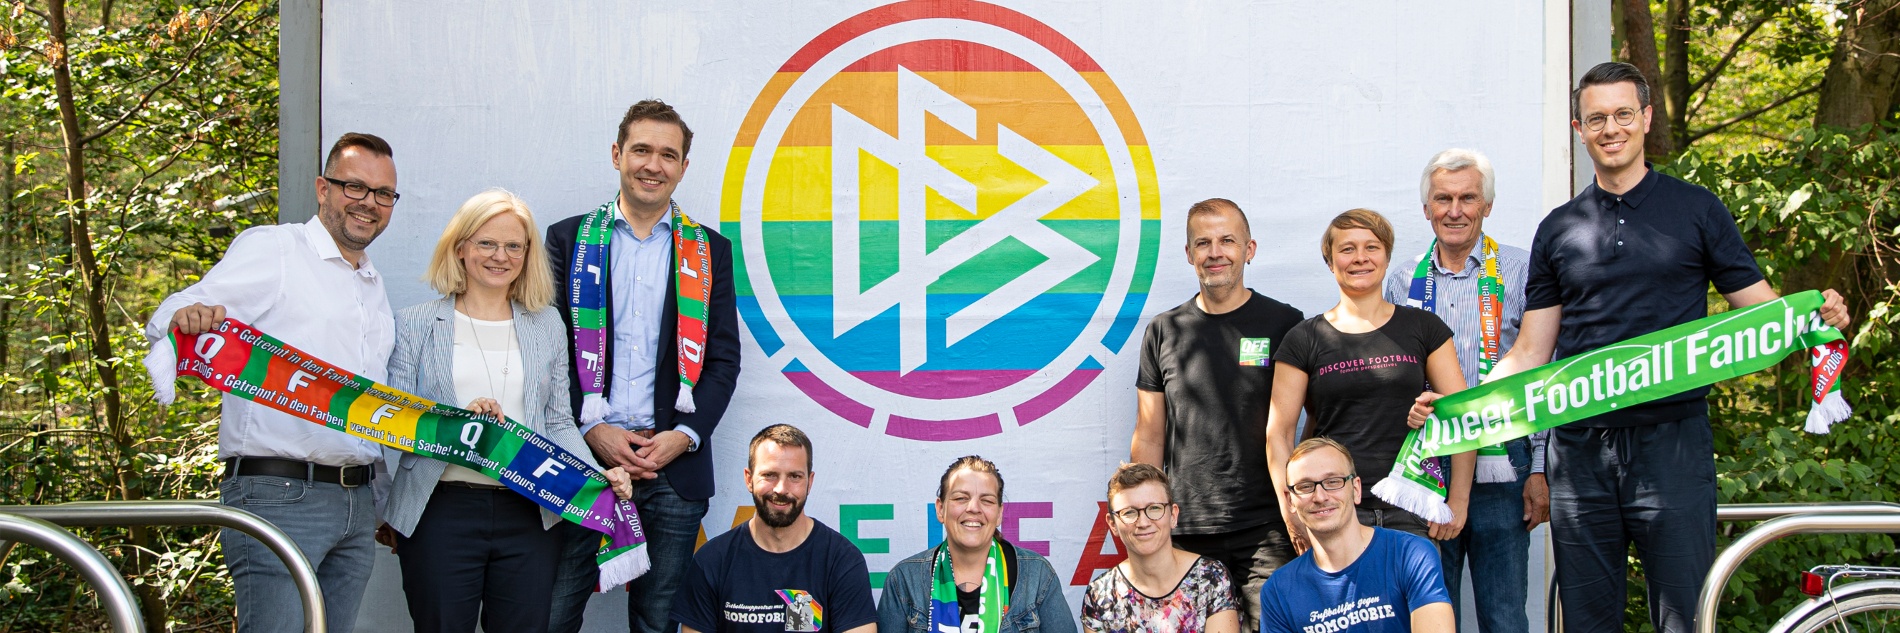 DFB-Logo in Regenbogenfarben auf einer Plakatwand. Davor versammelten sich Fans, die sich gegen Homophobie im Fußball engagieren.